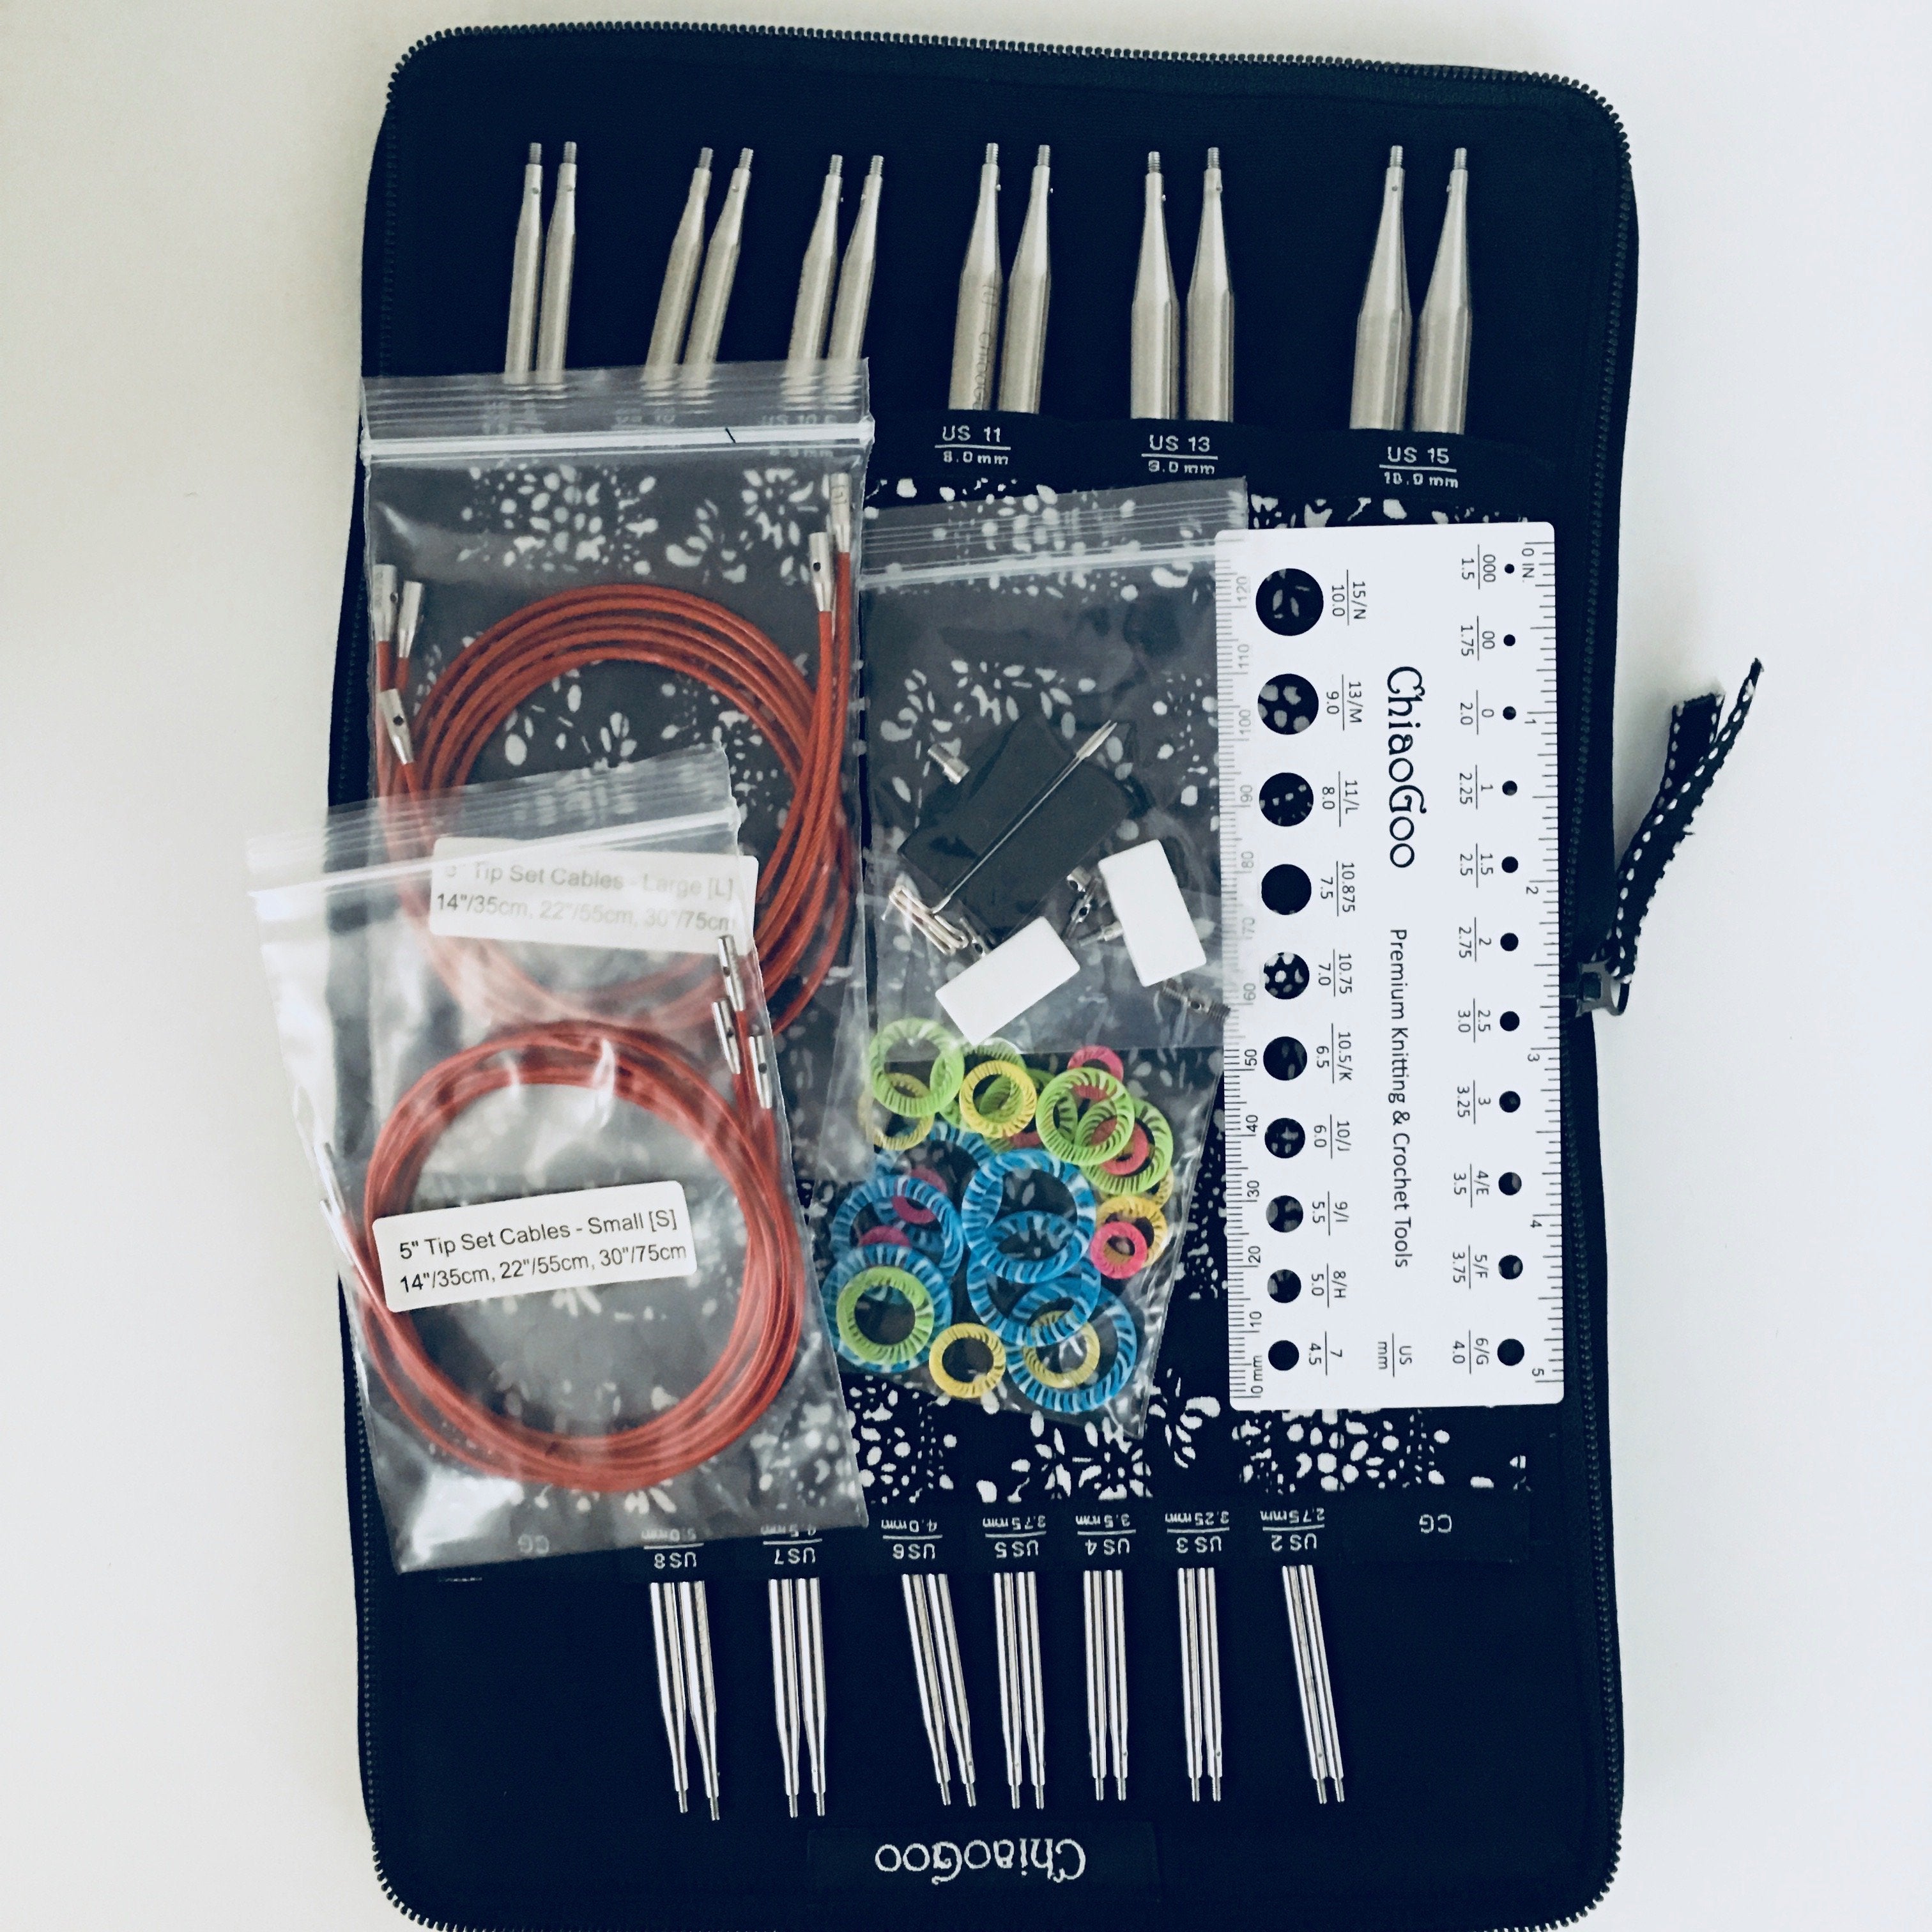 Chiaogoo Circular Knitting Needles Set - 1.5-10mm Stainless Steel